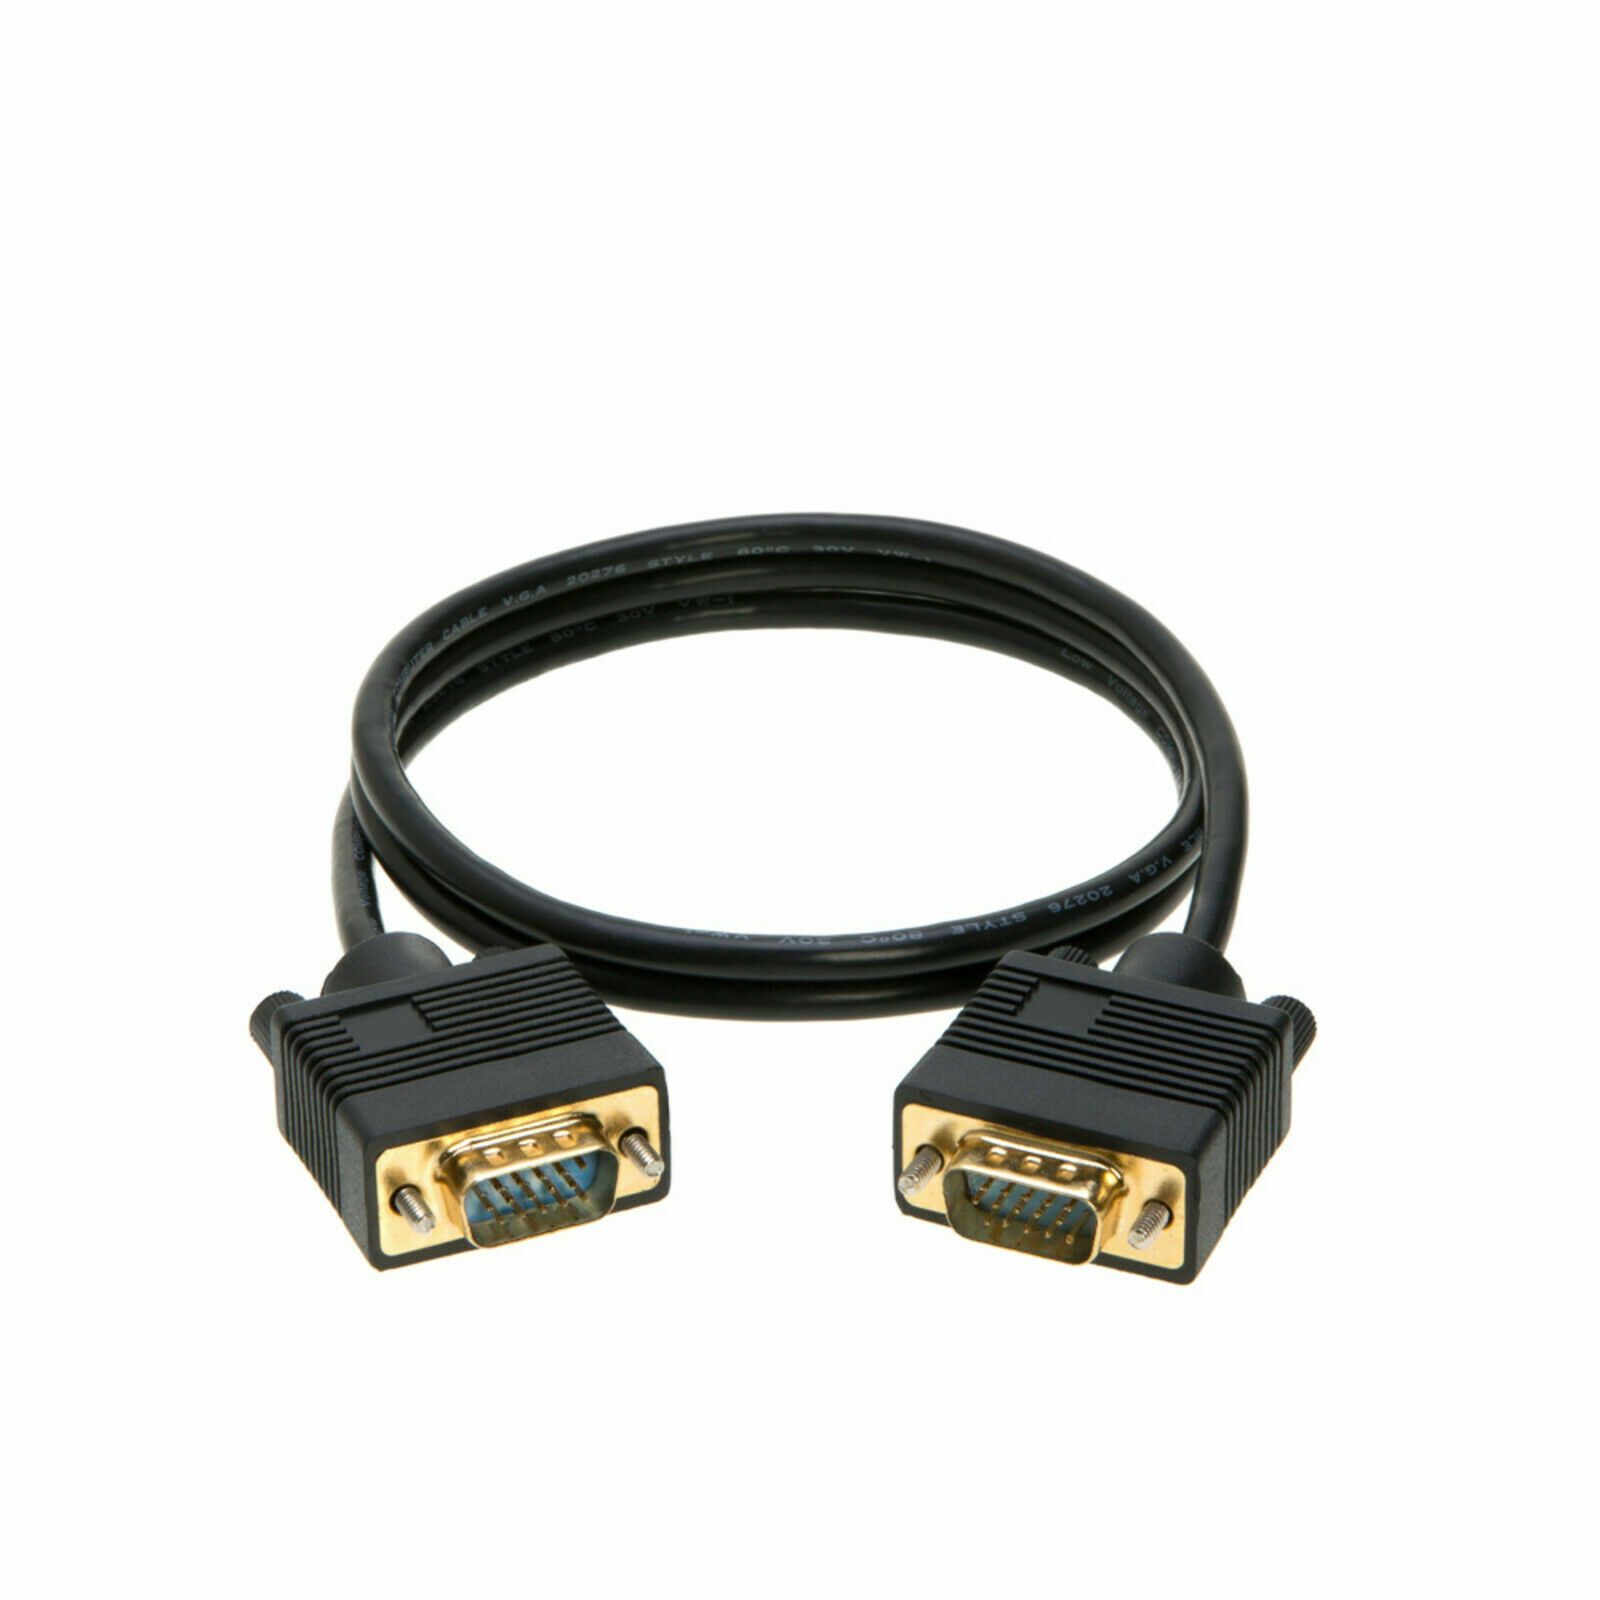 SVGA Cable Male To Male Monitor Cord PC Super VGA 3 6 10 15 25 30 50 100 FT Lot